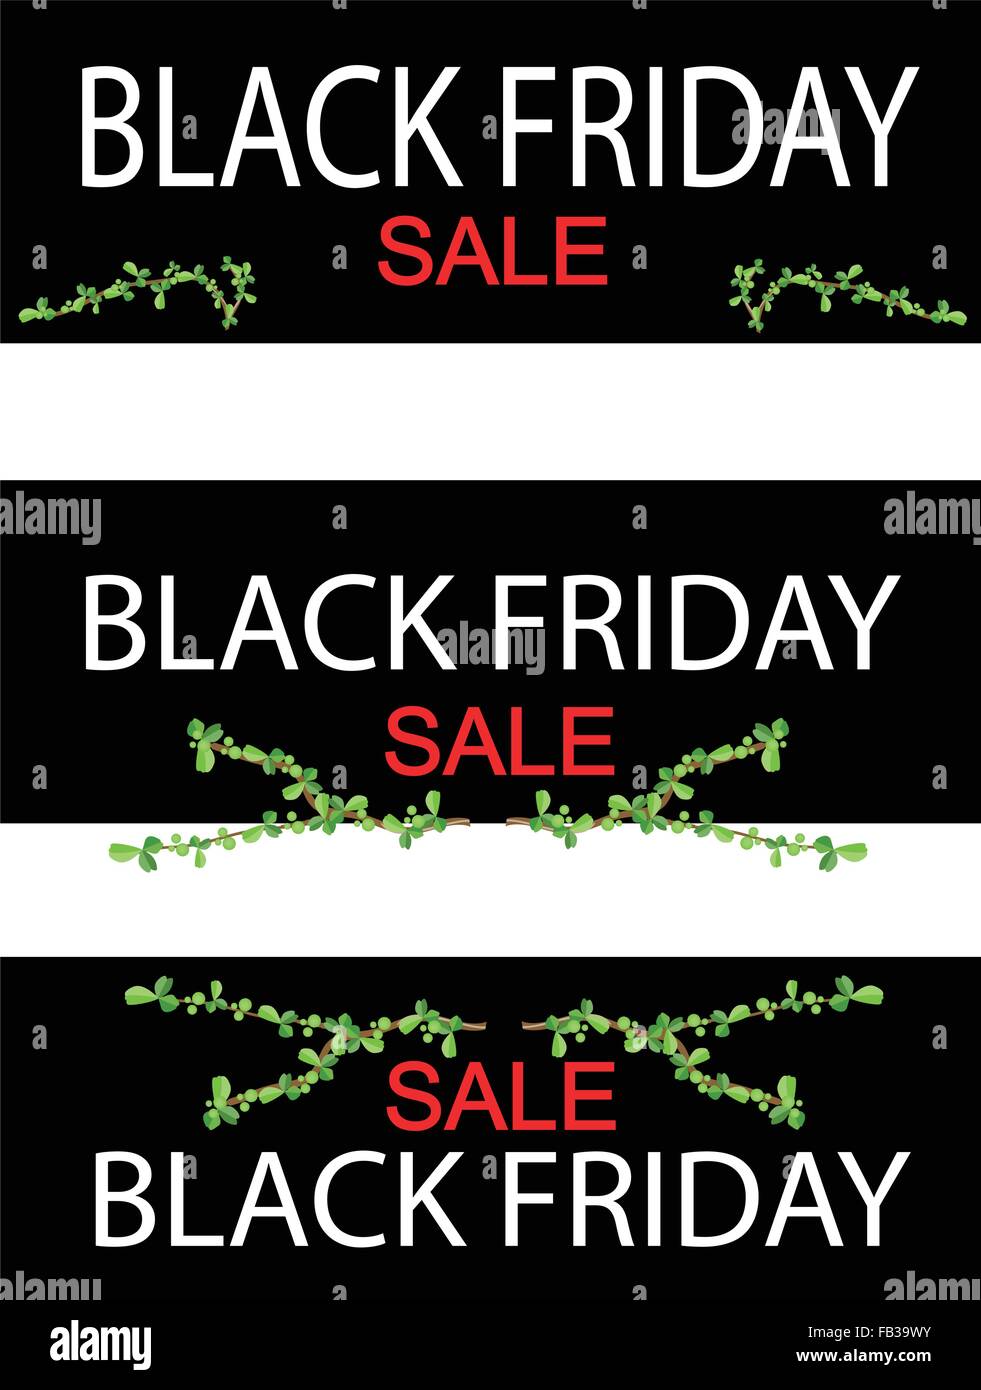 Illustration of Bonsai Tree on Black Friday Shopping Banner for Start Christmas Shopping Season. Stock Vector